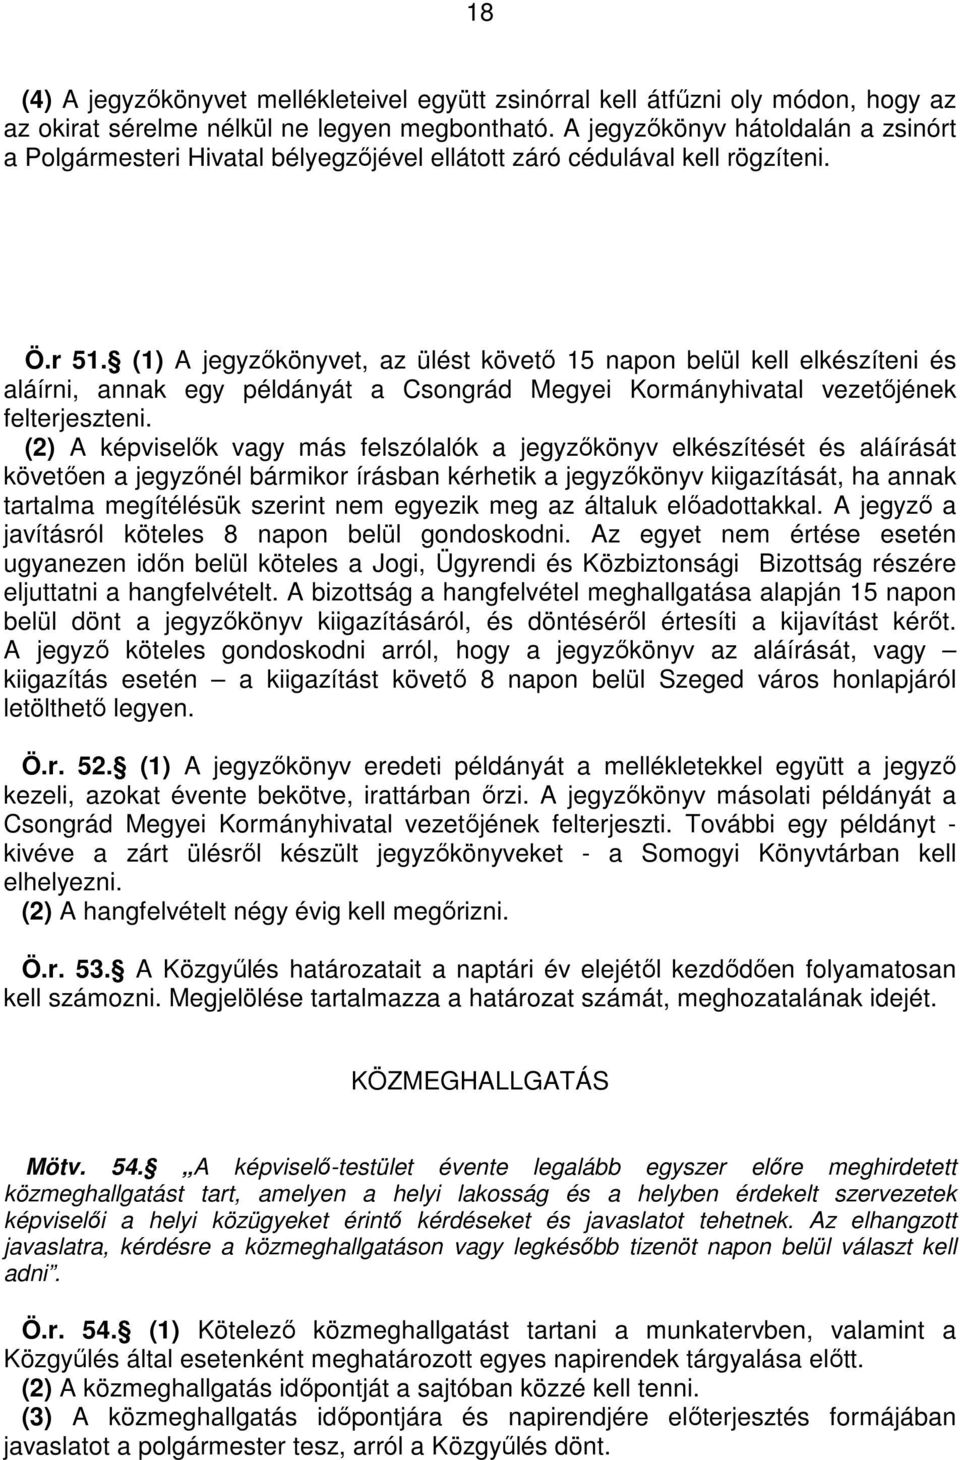 (1) A jegyzıkönyvet, az ülést követı 15 napon belül kell elkészíteni és aláírni, annak egy példányát a Csongrád Megyei Kormányhivatal vezetıjének felterjeszteni.